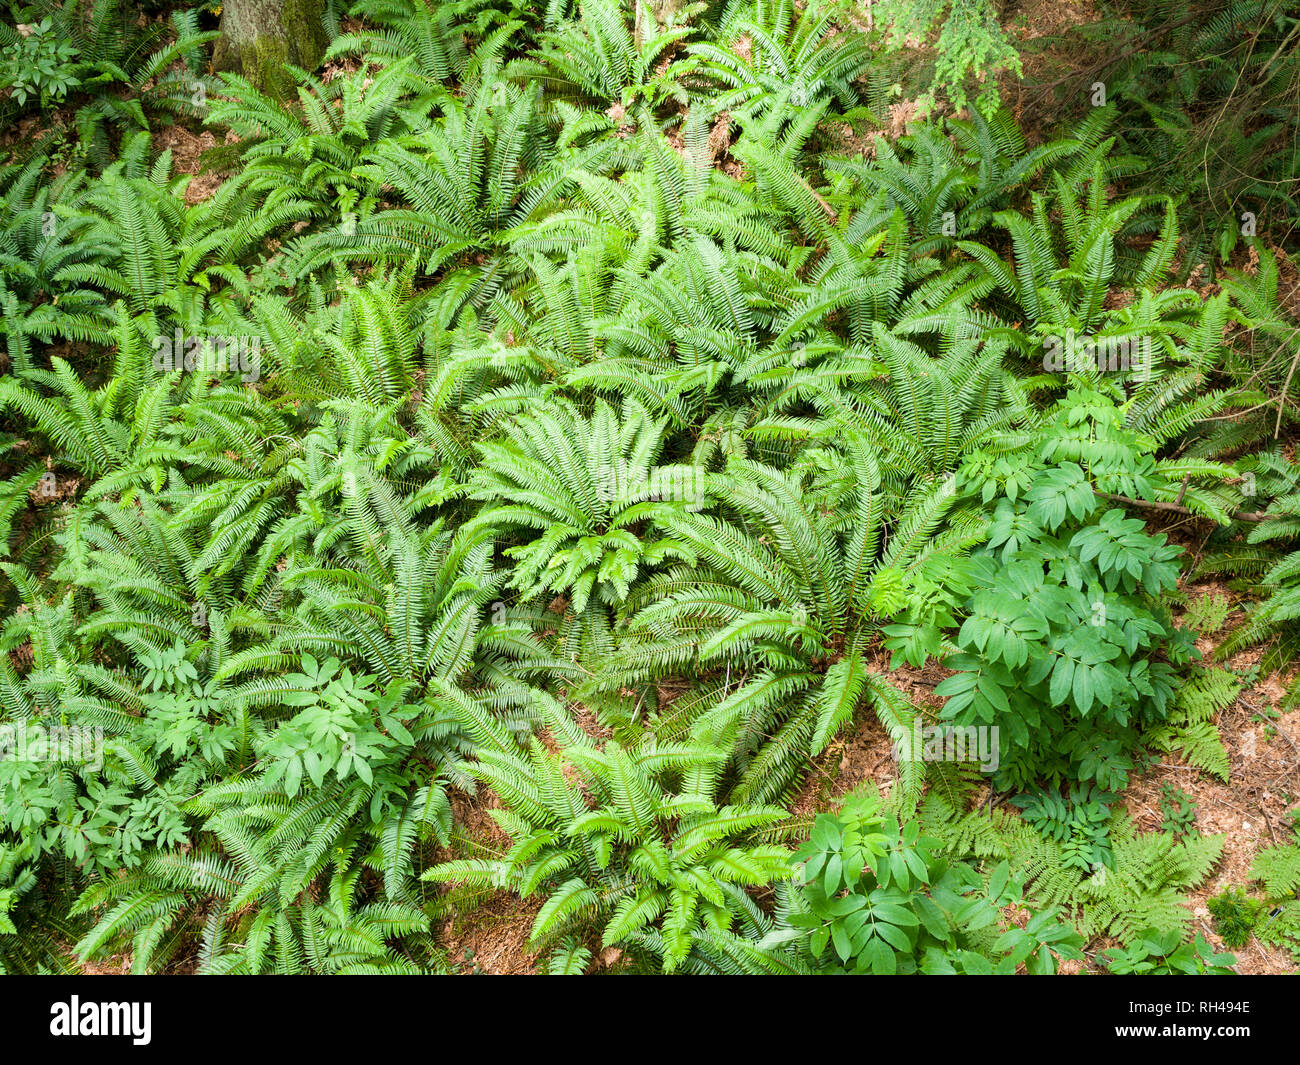 Pavimento della foresta di felci da Sopra: un cluster di Bright Green felci e altre piante di sottobosco in una costiera temperata foresta pluviale. Foto Stock